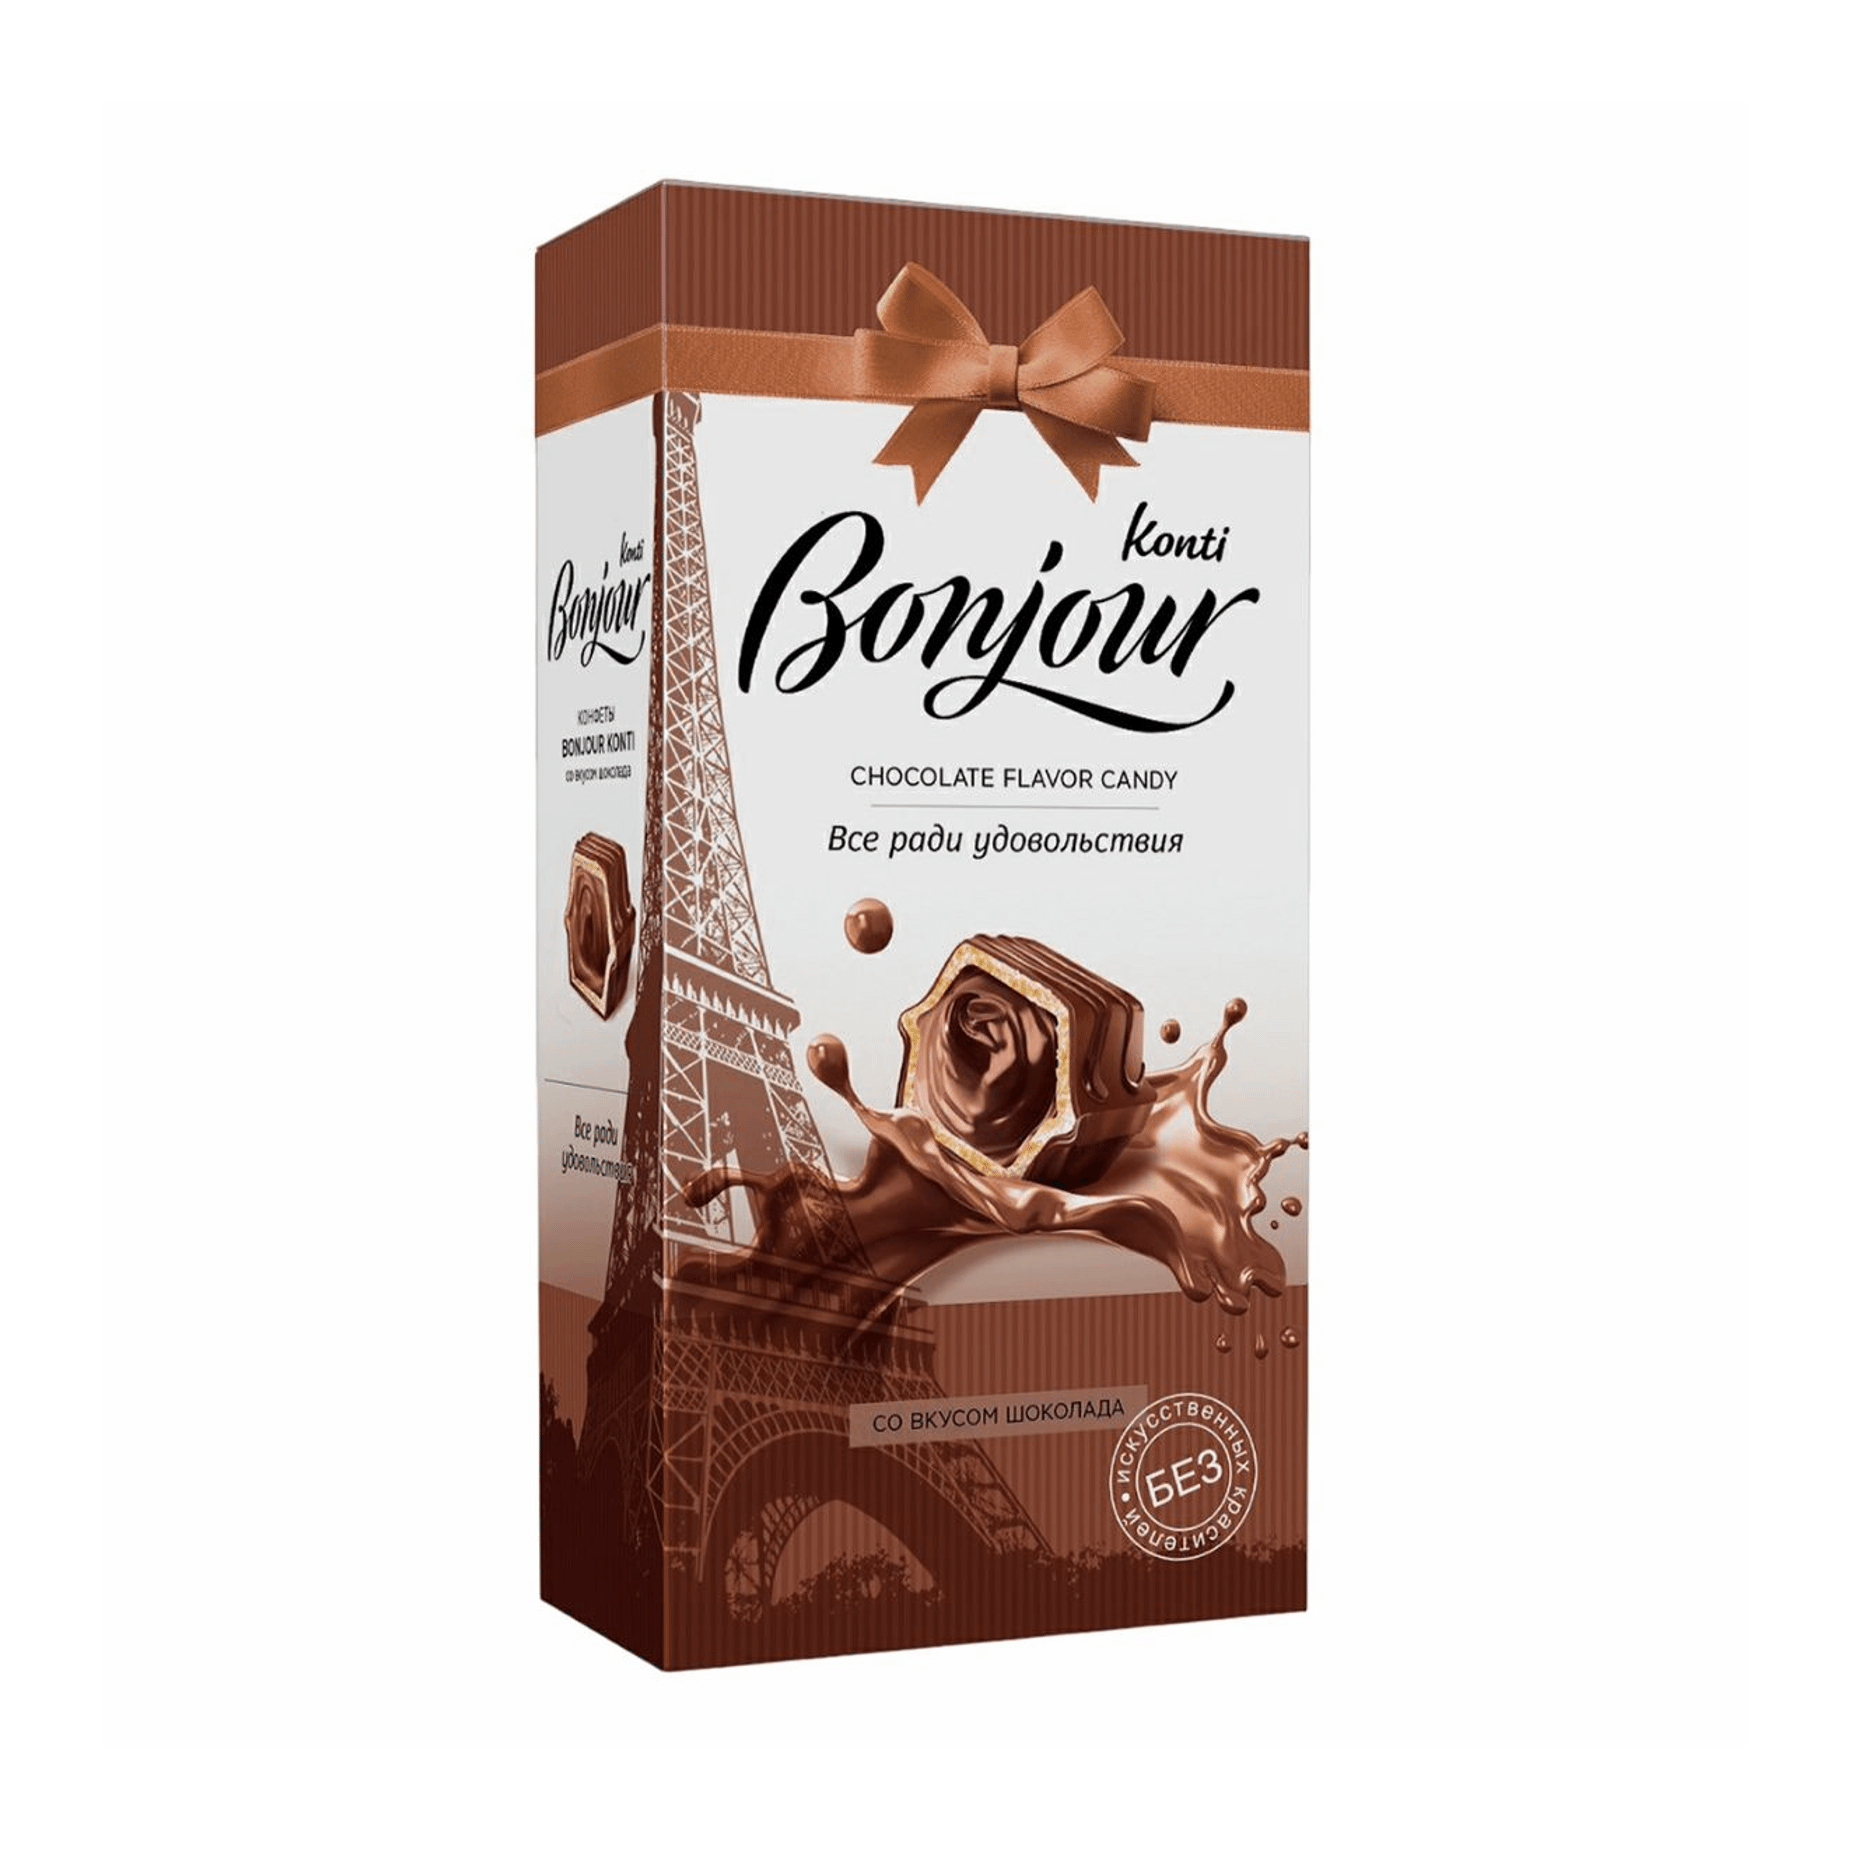 Конфеты шоколадные Konti Bonjour со вкусом шоколада 80 г конфеты konti золотая лилия 200 г